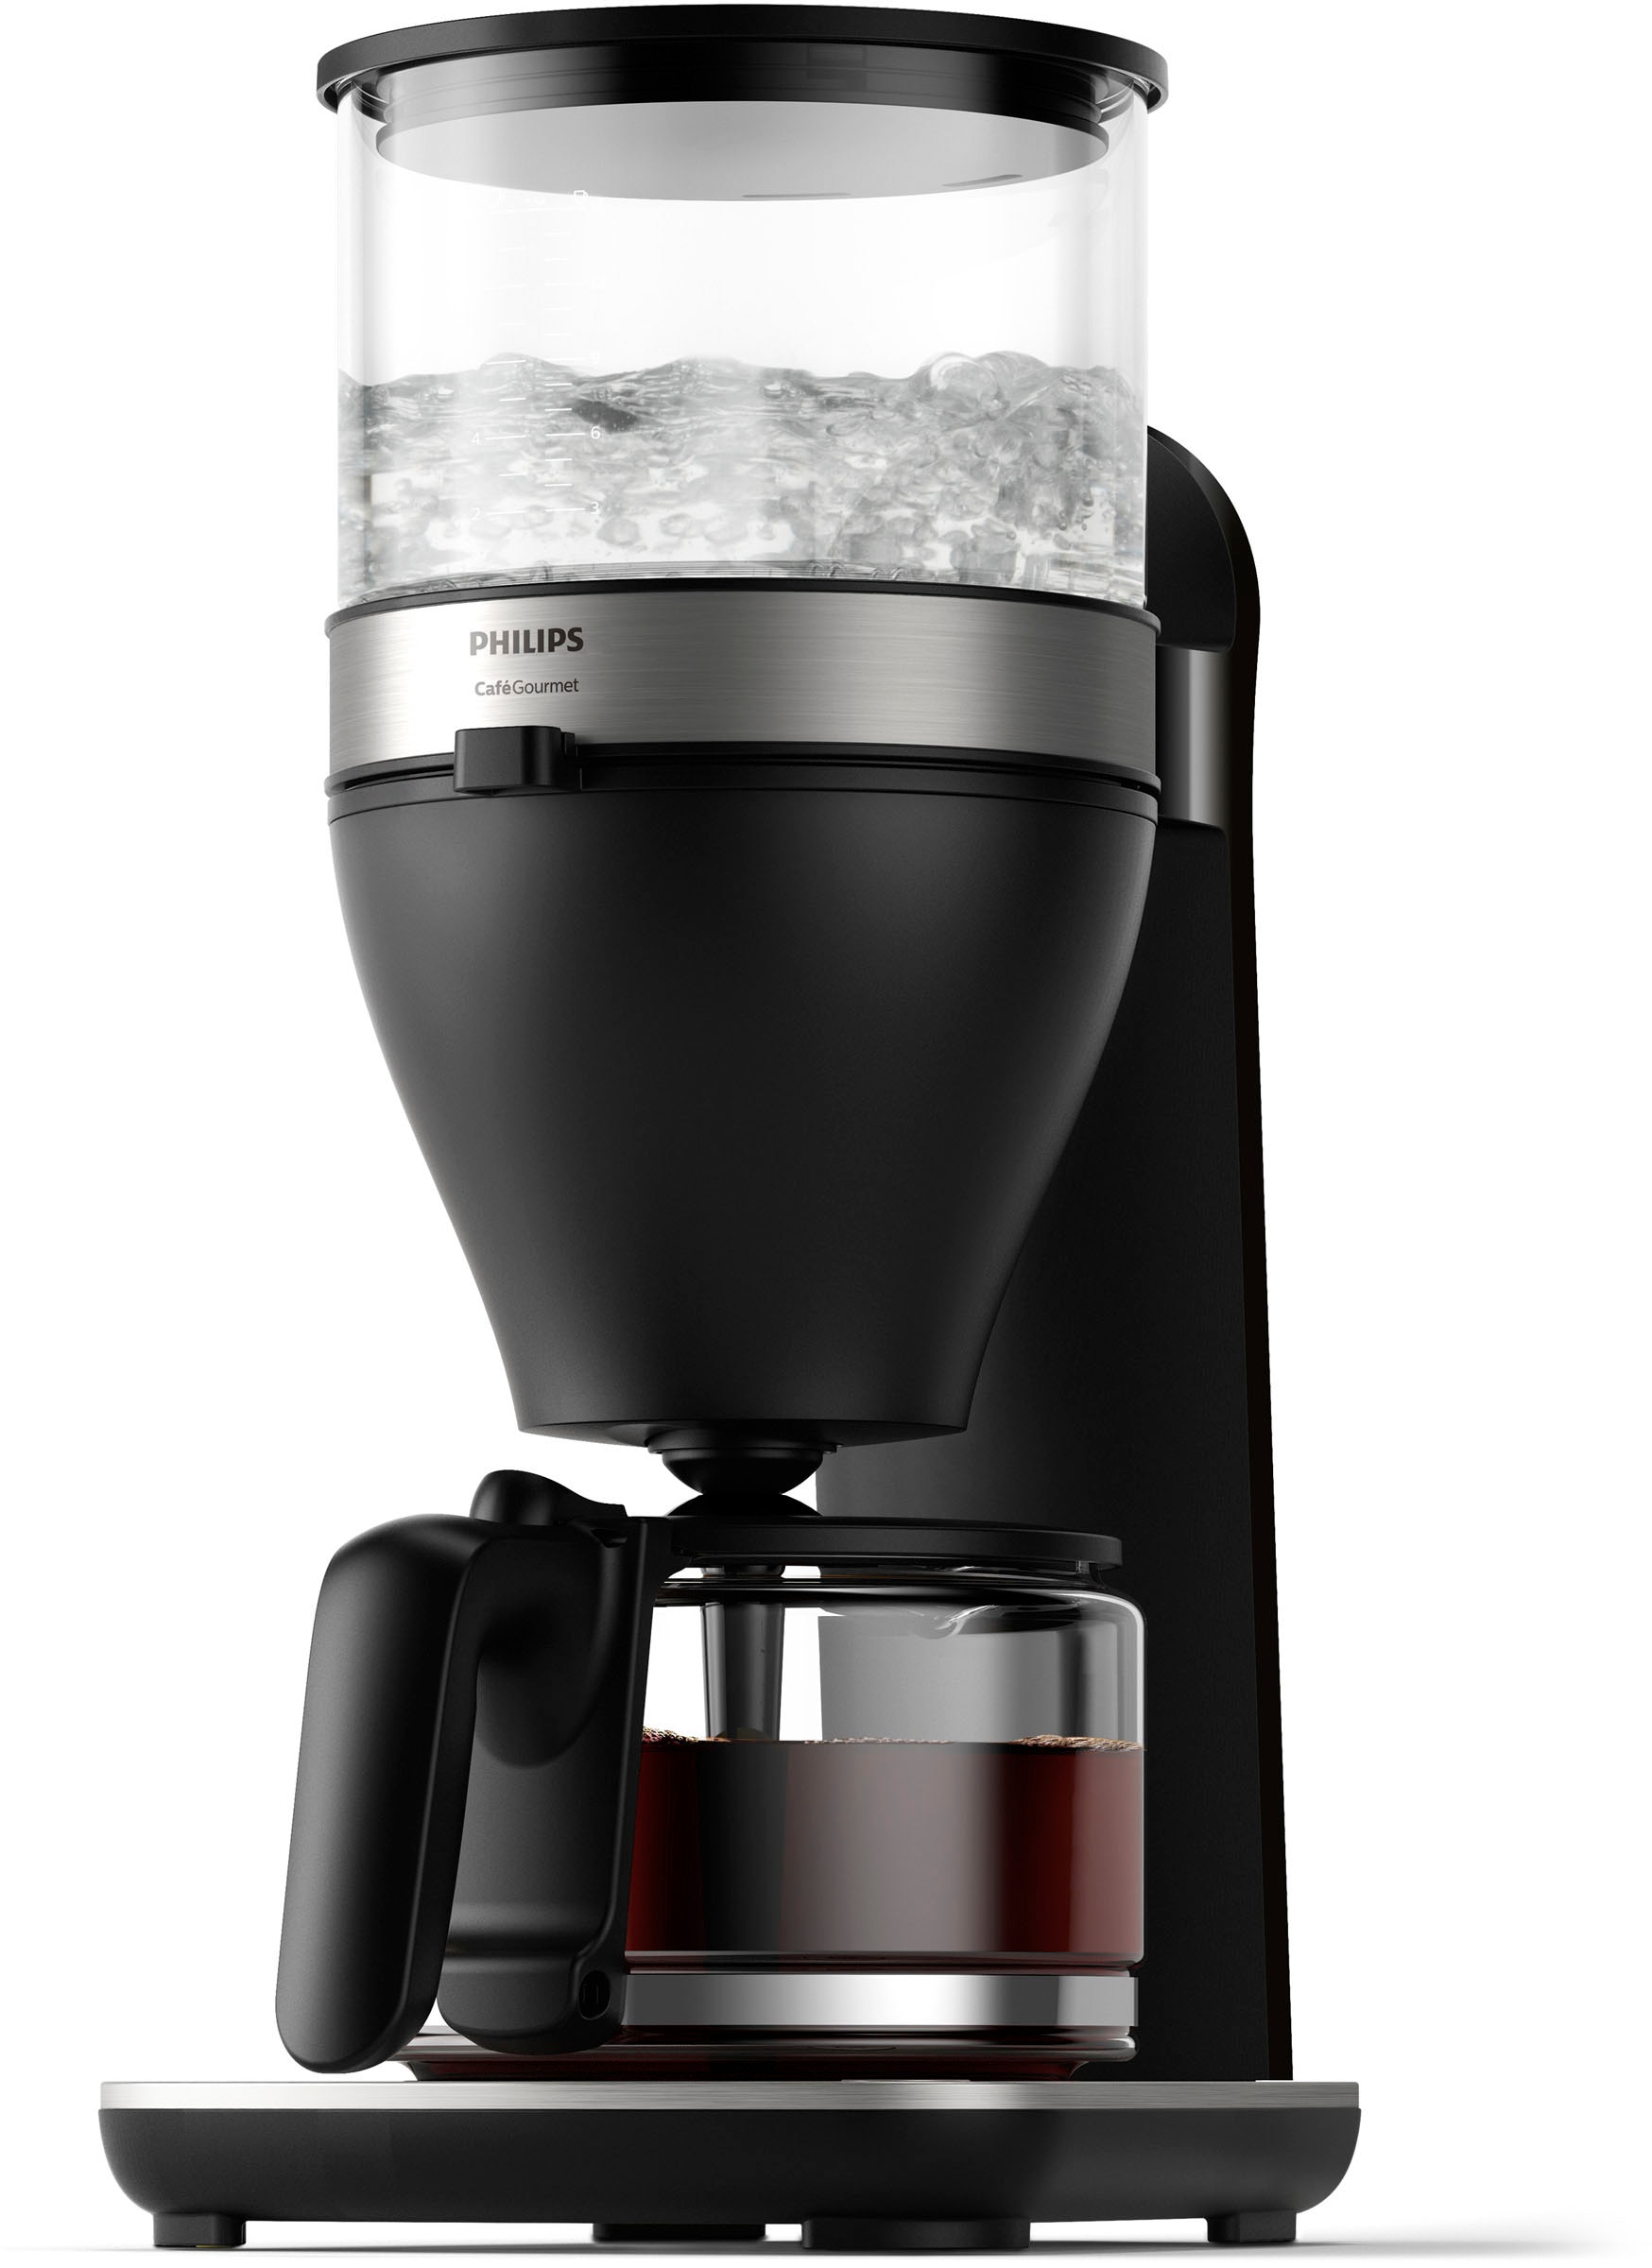 Philips Filterkaffeemaschine »Café HD5416/60« jetzt OTTO bestellen bei Gourmet